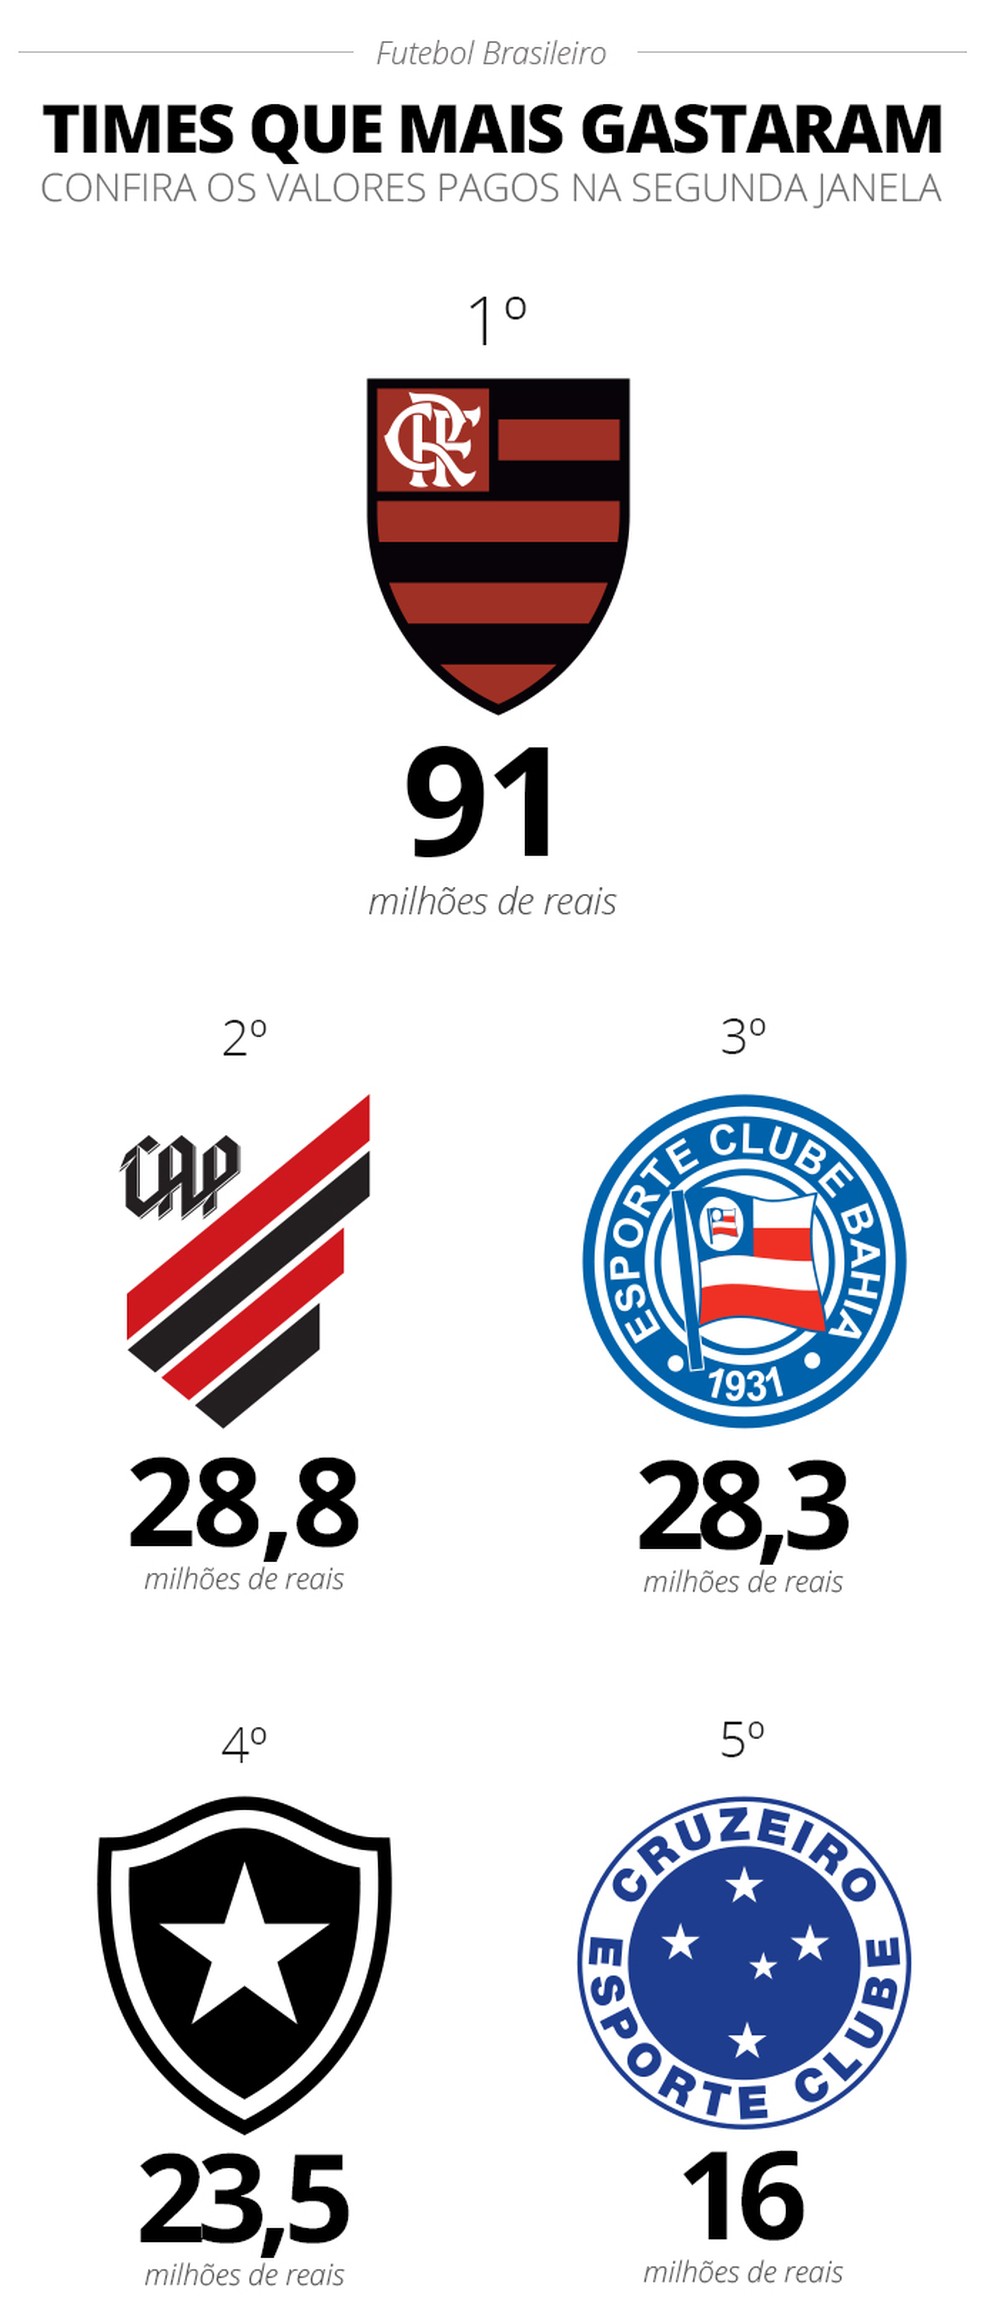 Enquanto o Vasco contrata novos jogadores, o Flamengo tem jogadores  valiosos desde 2019